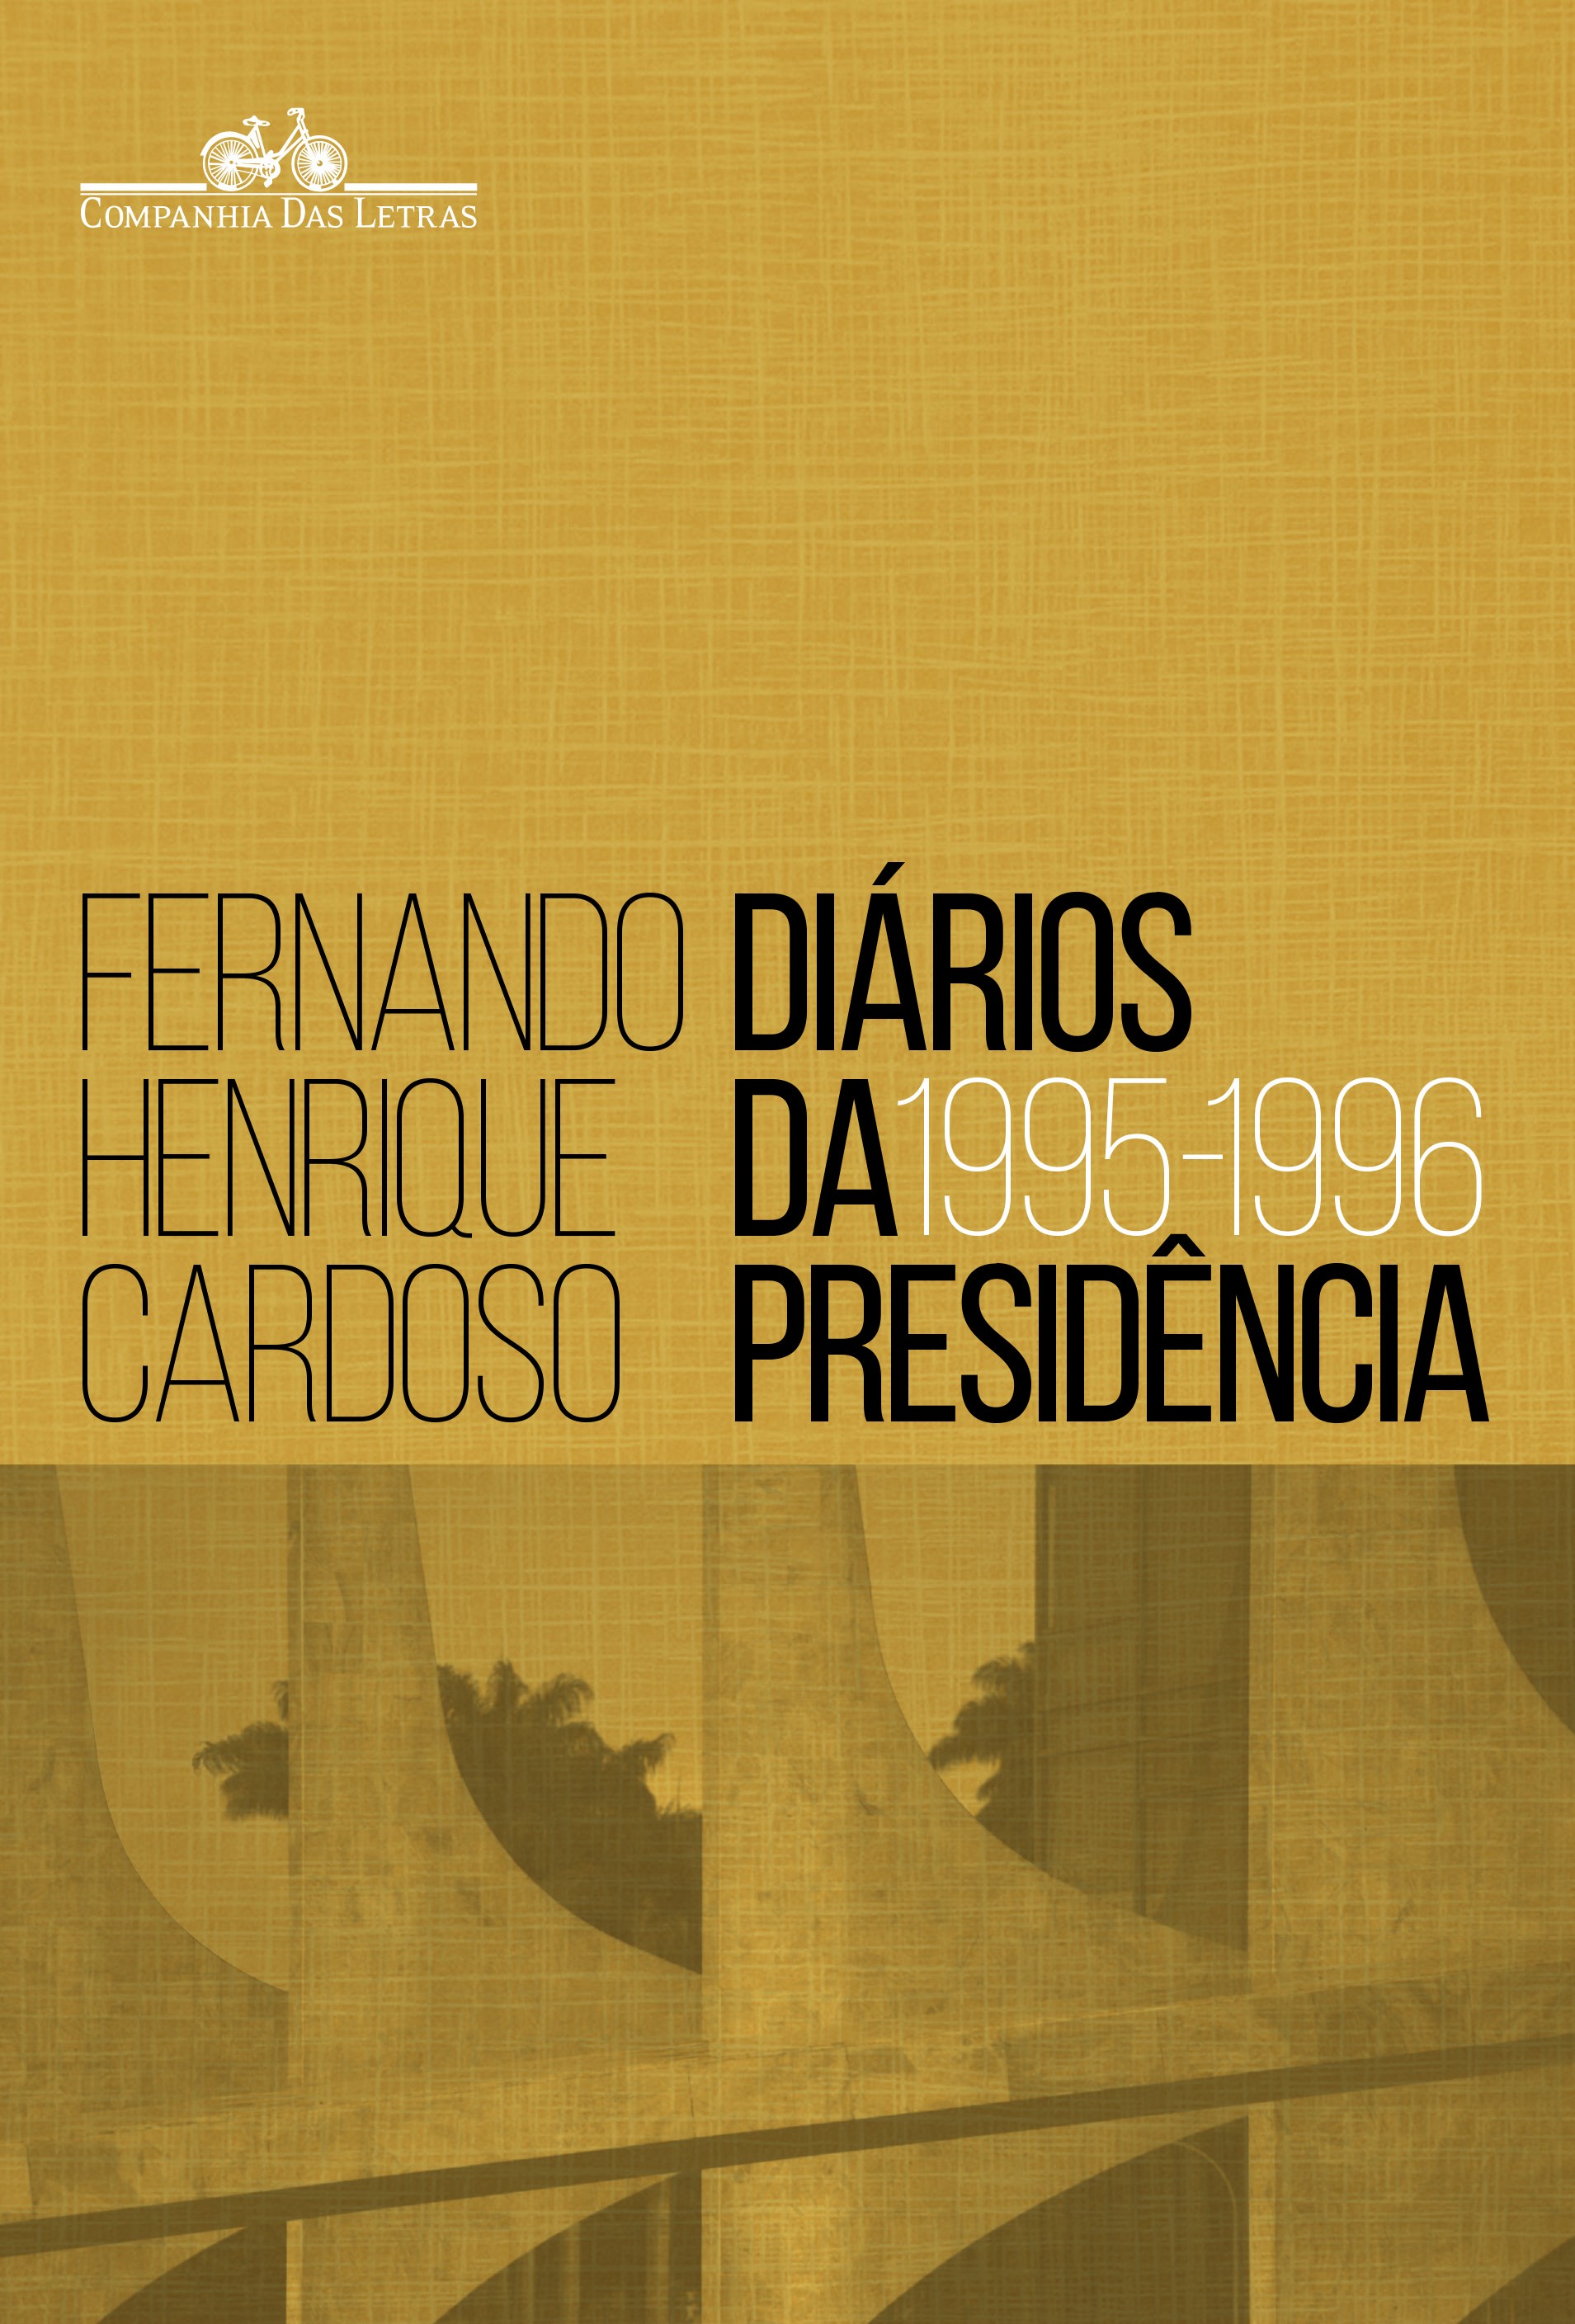 Diários da presidência 1995-1996 (volume 1)